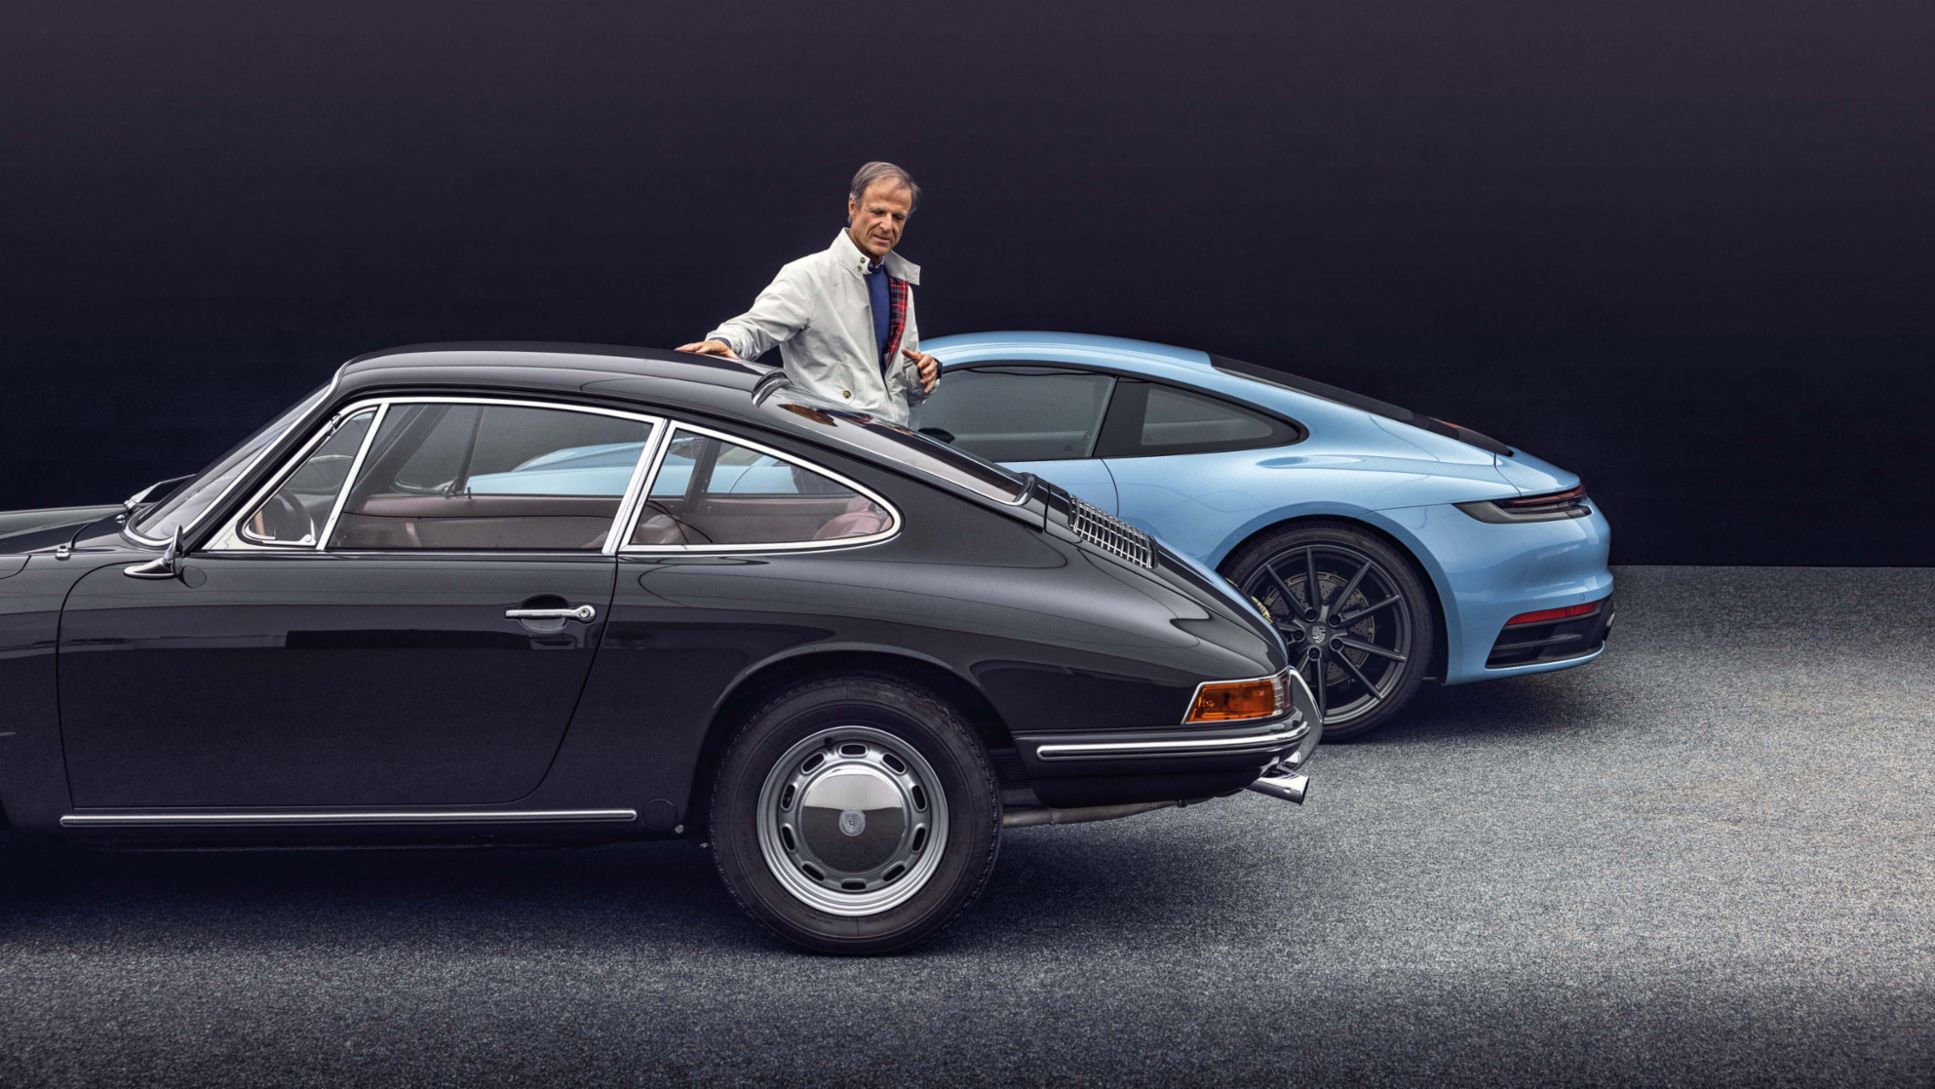 60 years of Porsche 911: an interview with Michael Mauer - Porsche